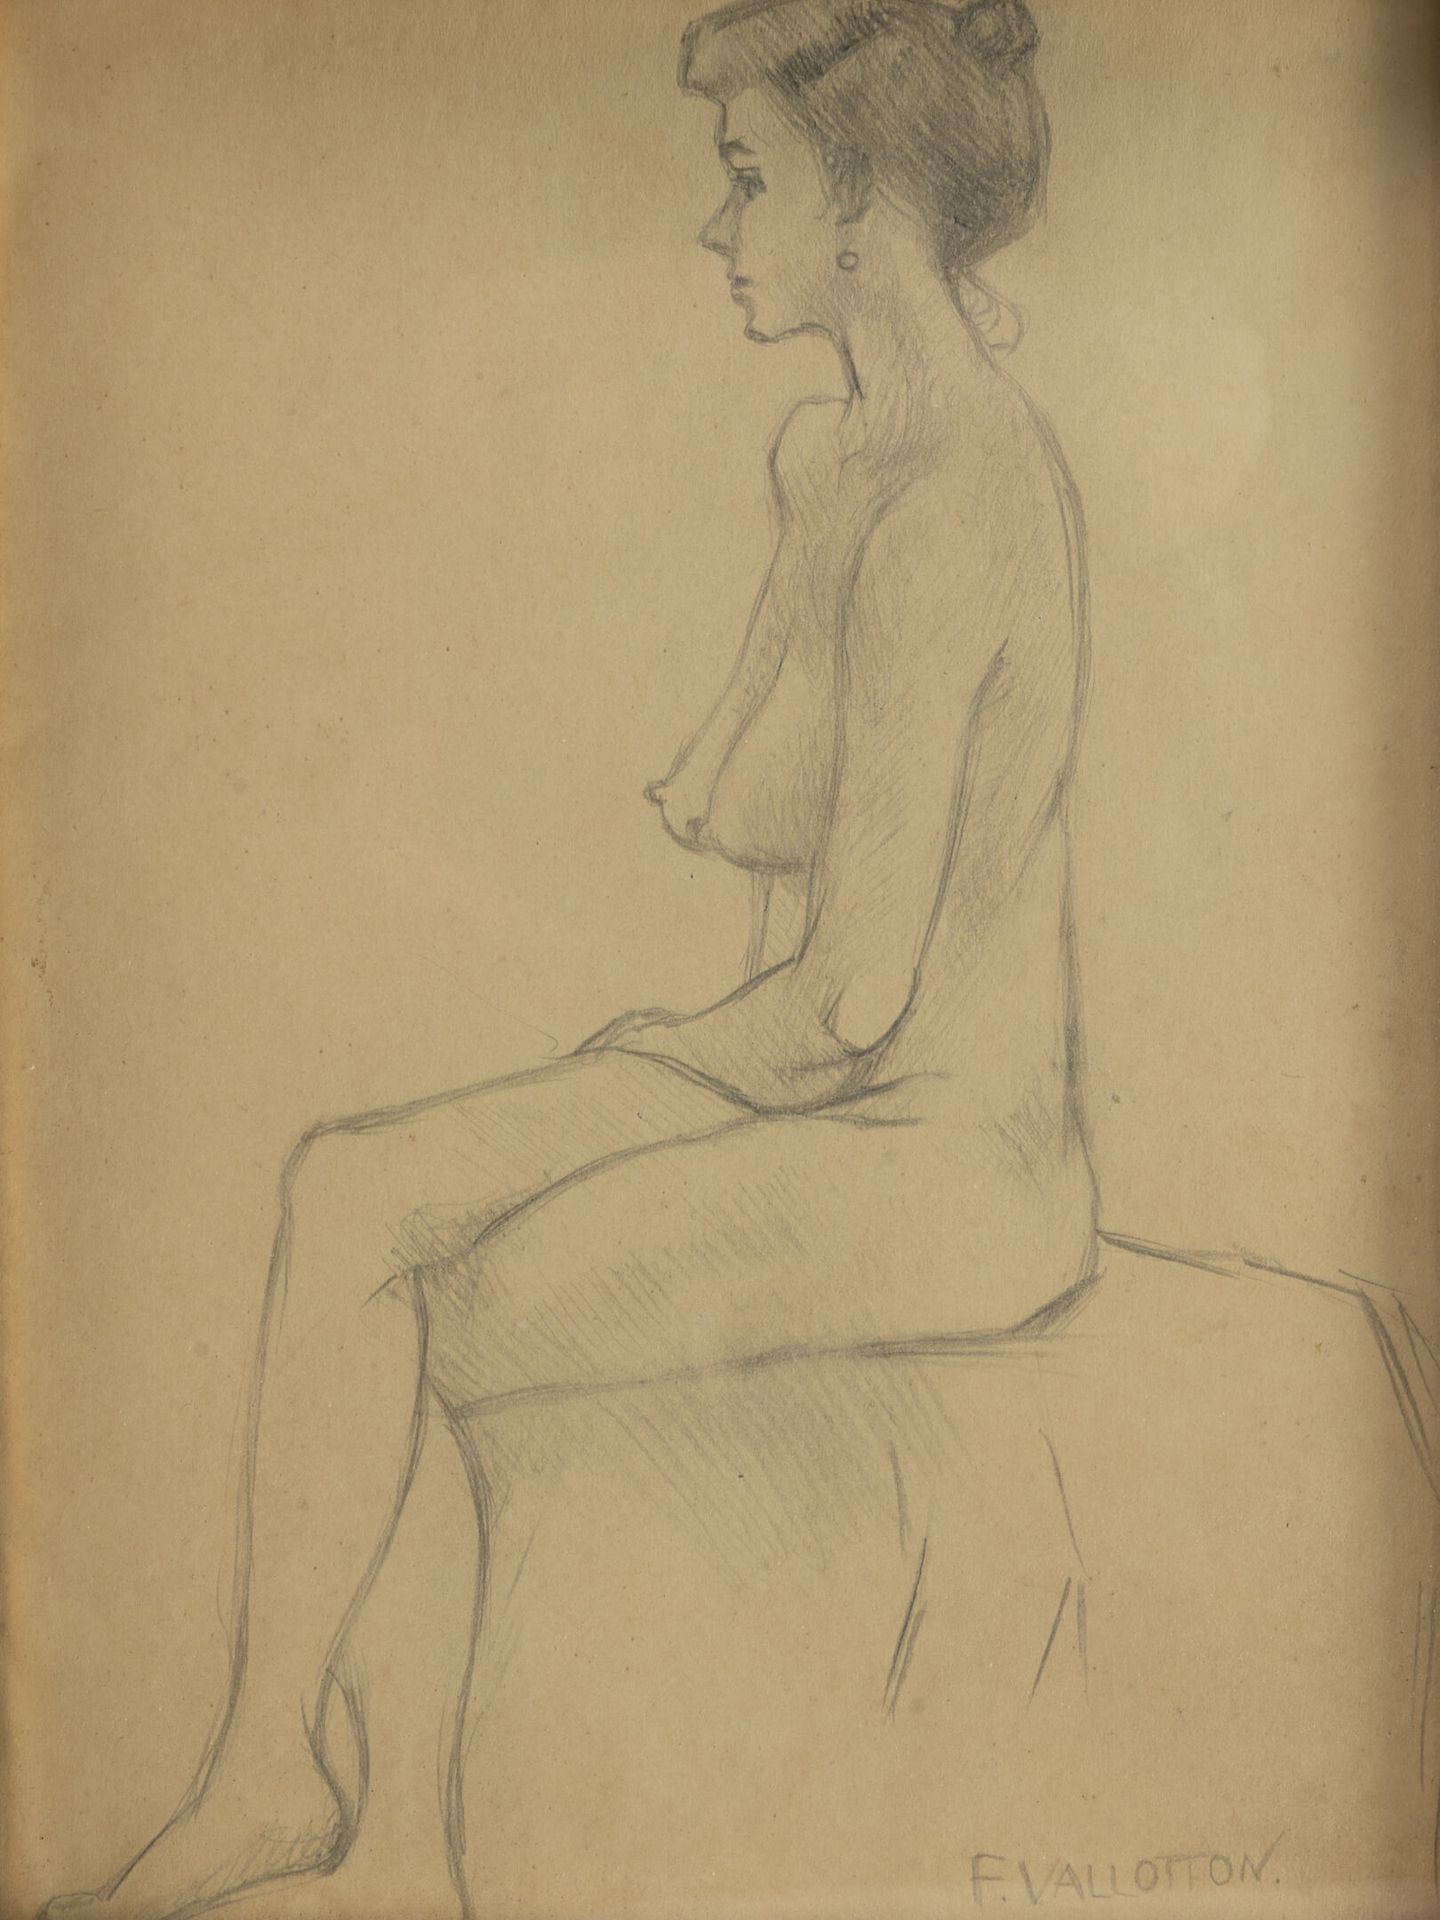 ECOLE FRANÇAISE DU DÉBUT DU XXÈME SIÈCLE 裸体模特，坐着。

铅笔画。

签名为F. VALLOTTON，不保证。

2&hellip;